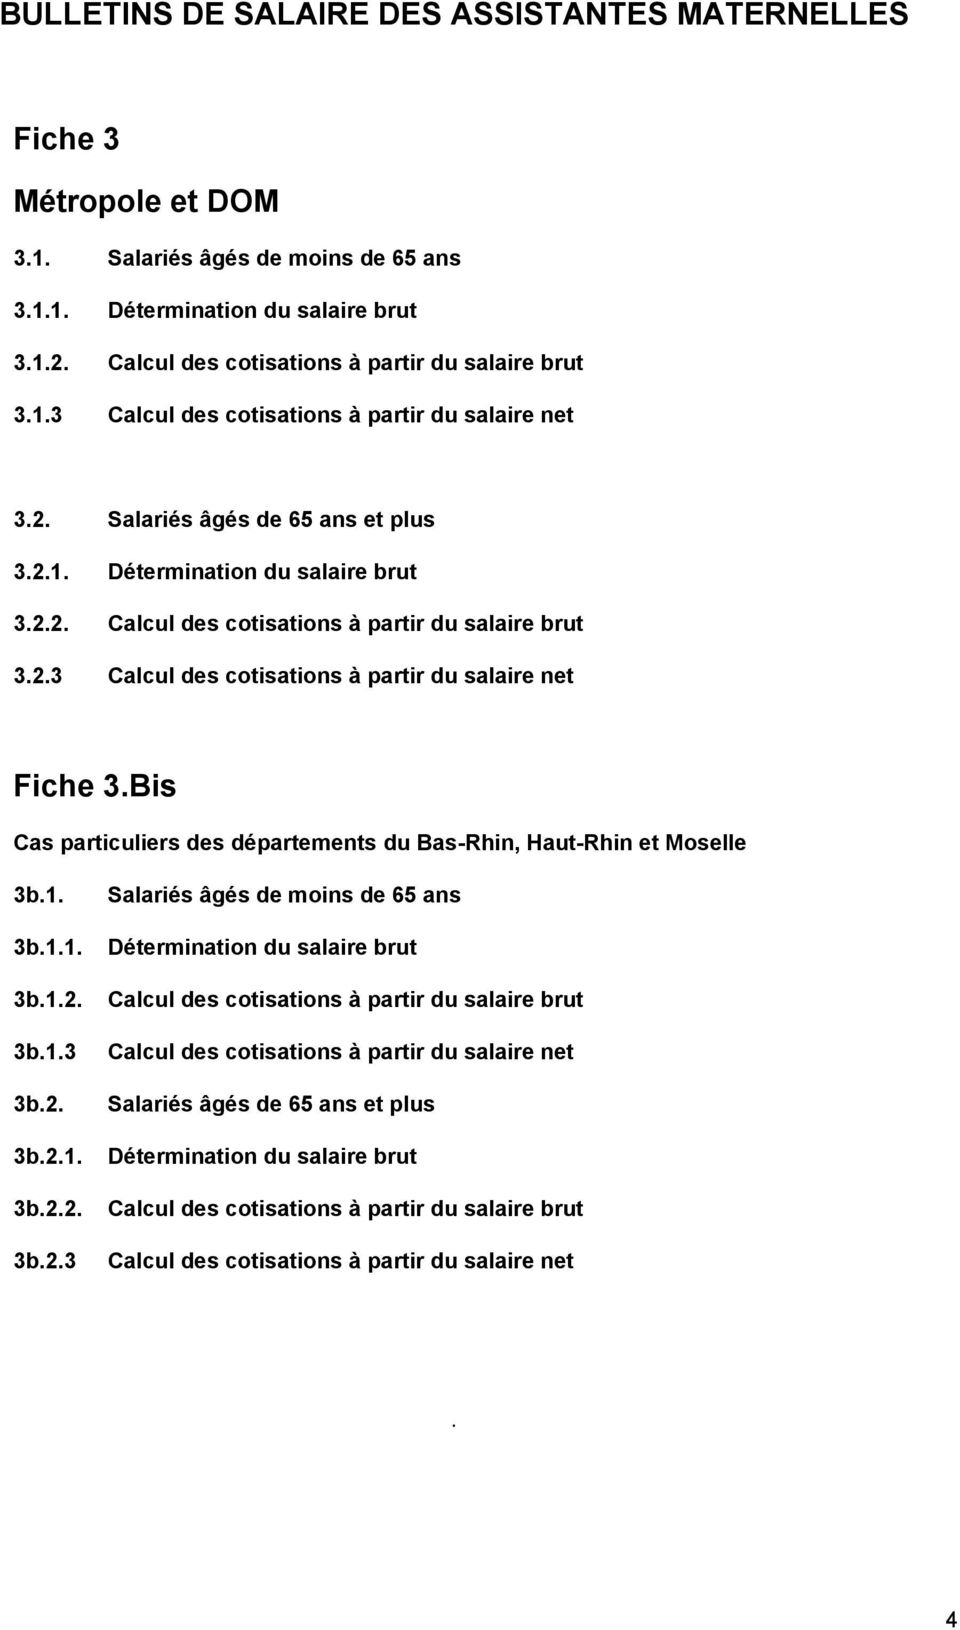 2.3 Calcul des cotisations à partir du salaire net Fiche 3.Bis Cas particuliers des départements du Bas-Rhin, Haut-Rhin et Moselle 3b.1. 3b.1.1. 3b.1.2. 3b.1.3 3b.2. 3b.2.1. 3b.2.2. 3b.2.3 Salariés